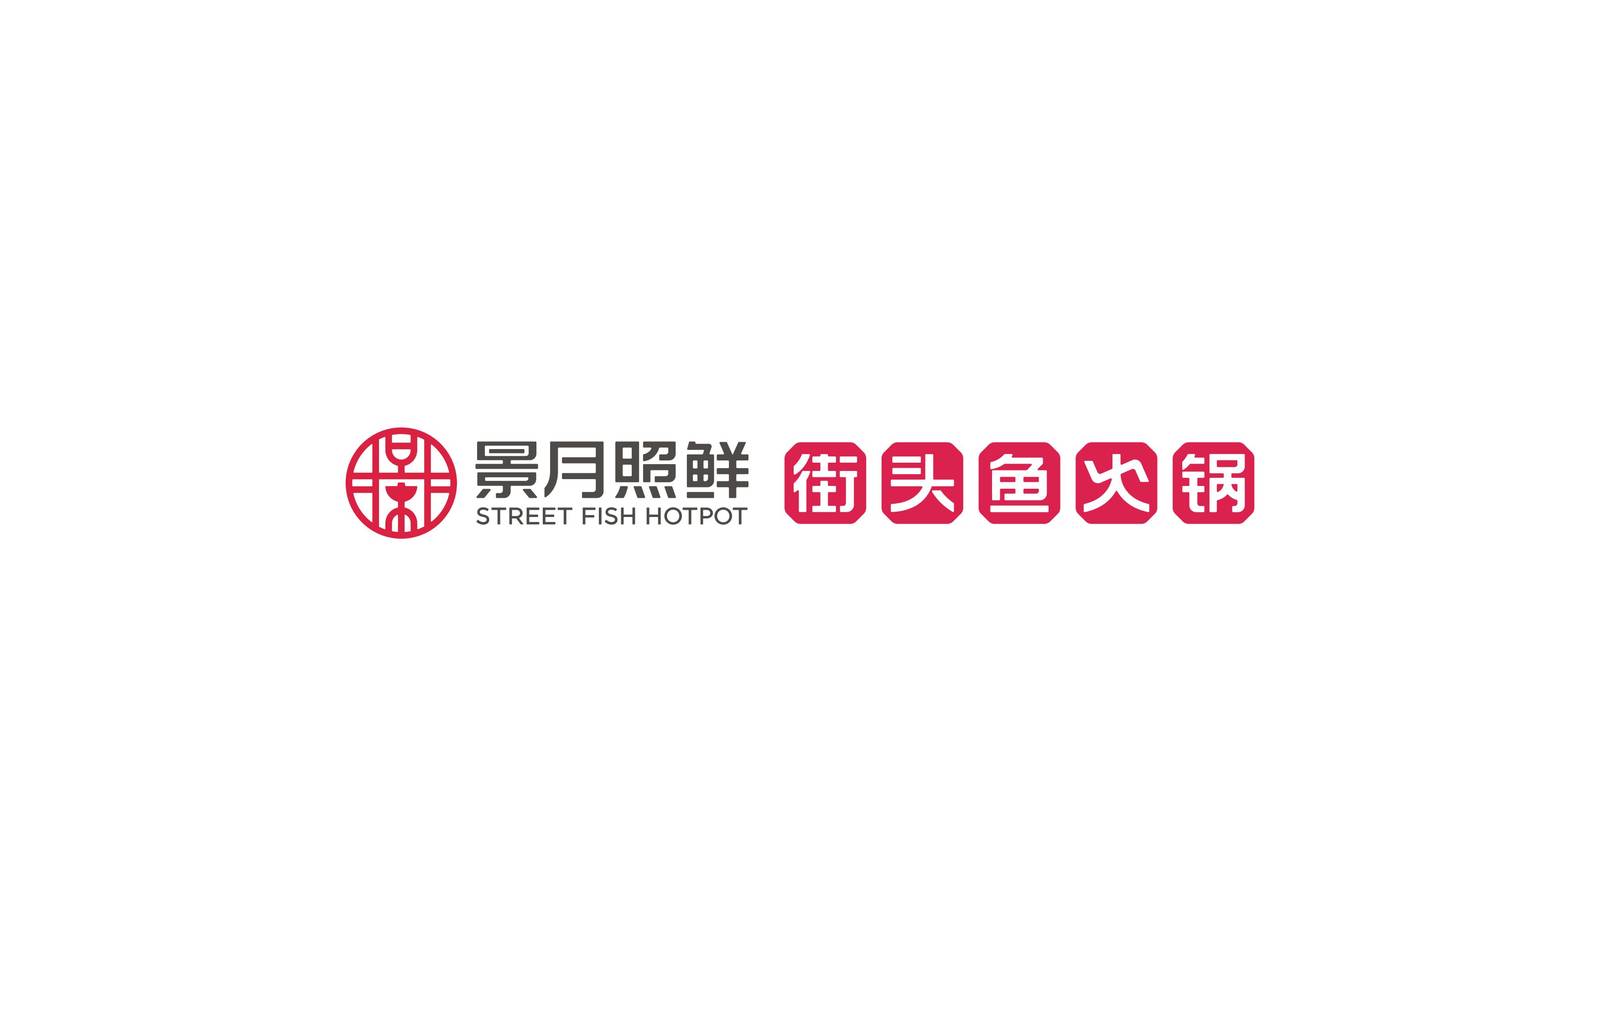 景月照鲜品牌街头鱼火锅餐饮标志LOGO-第8张